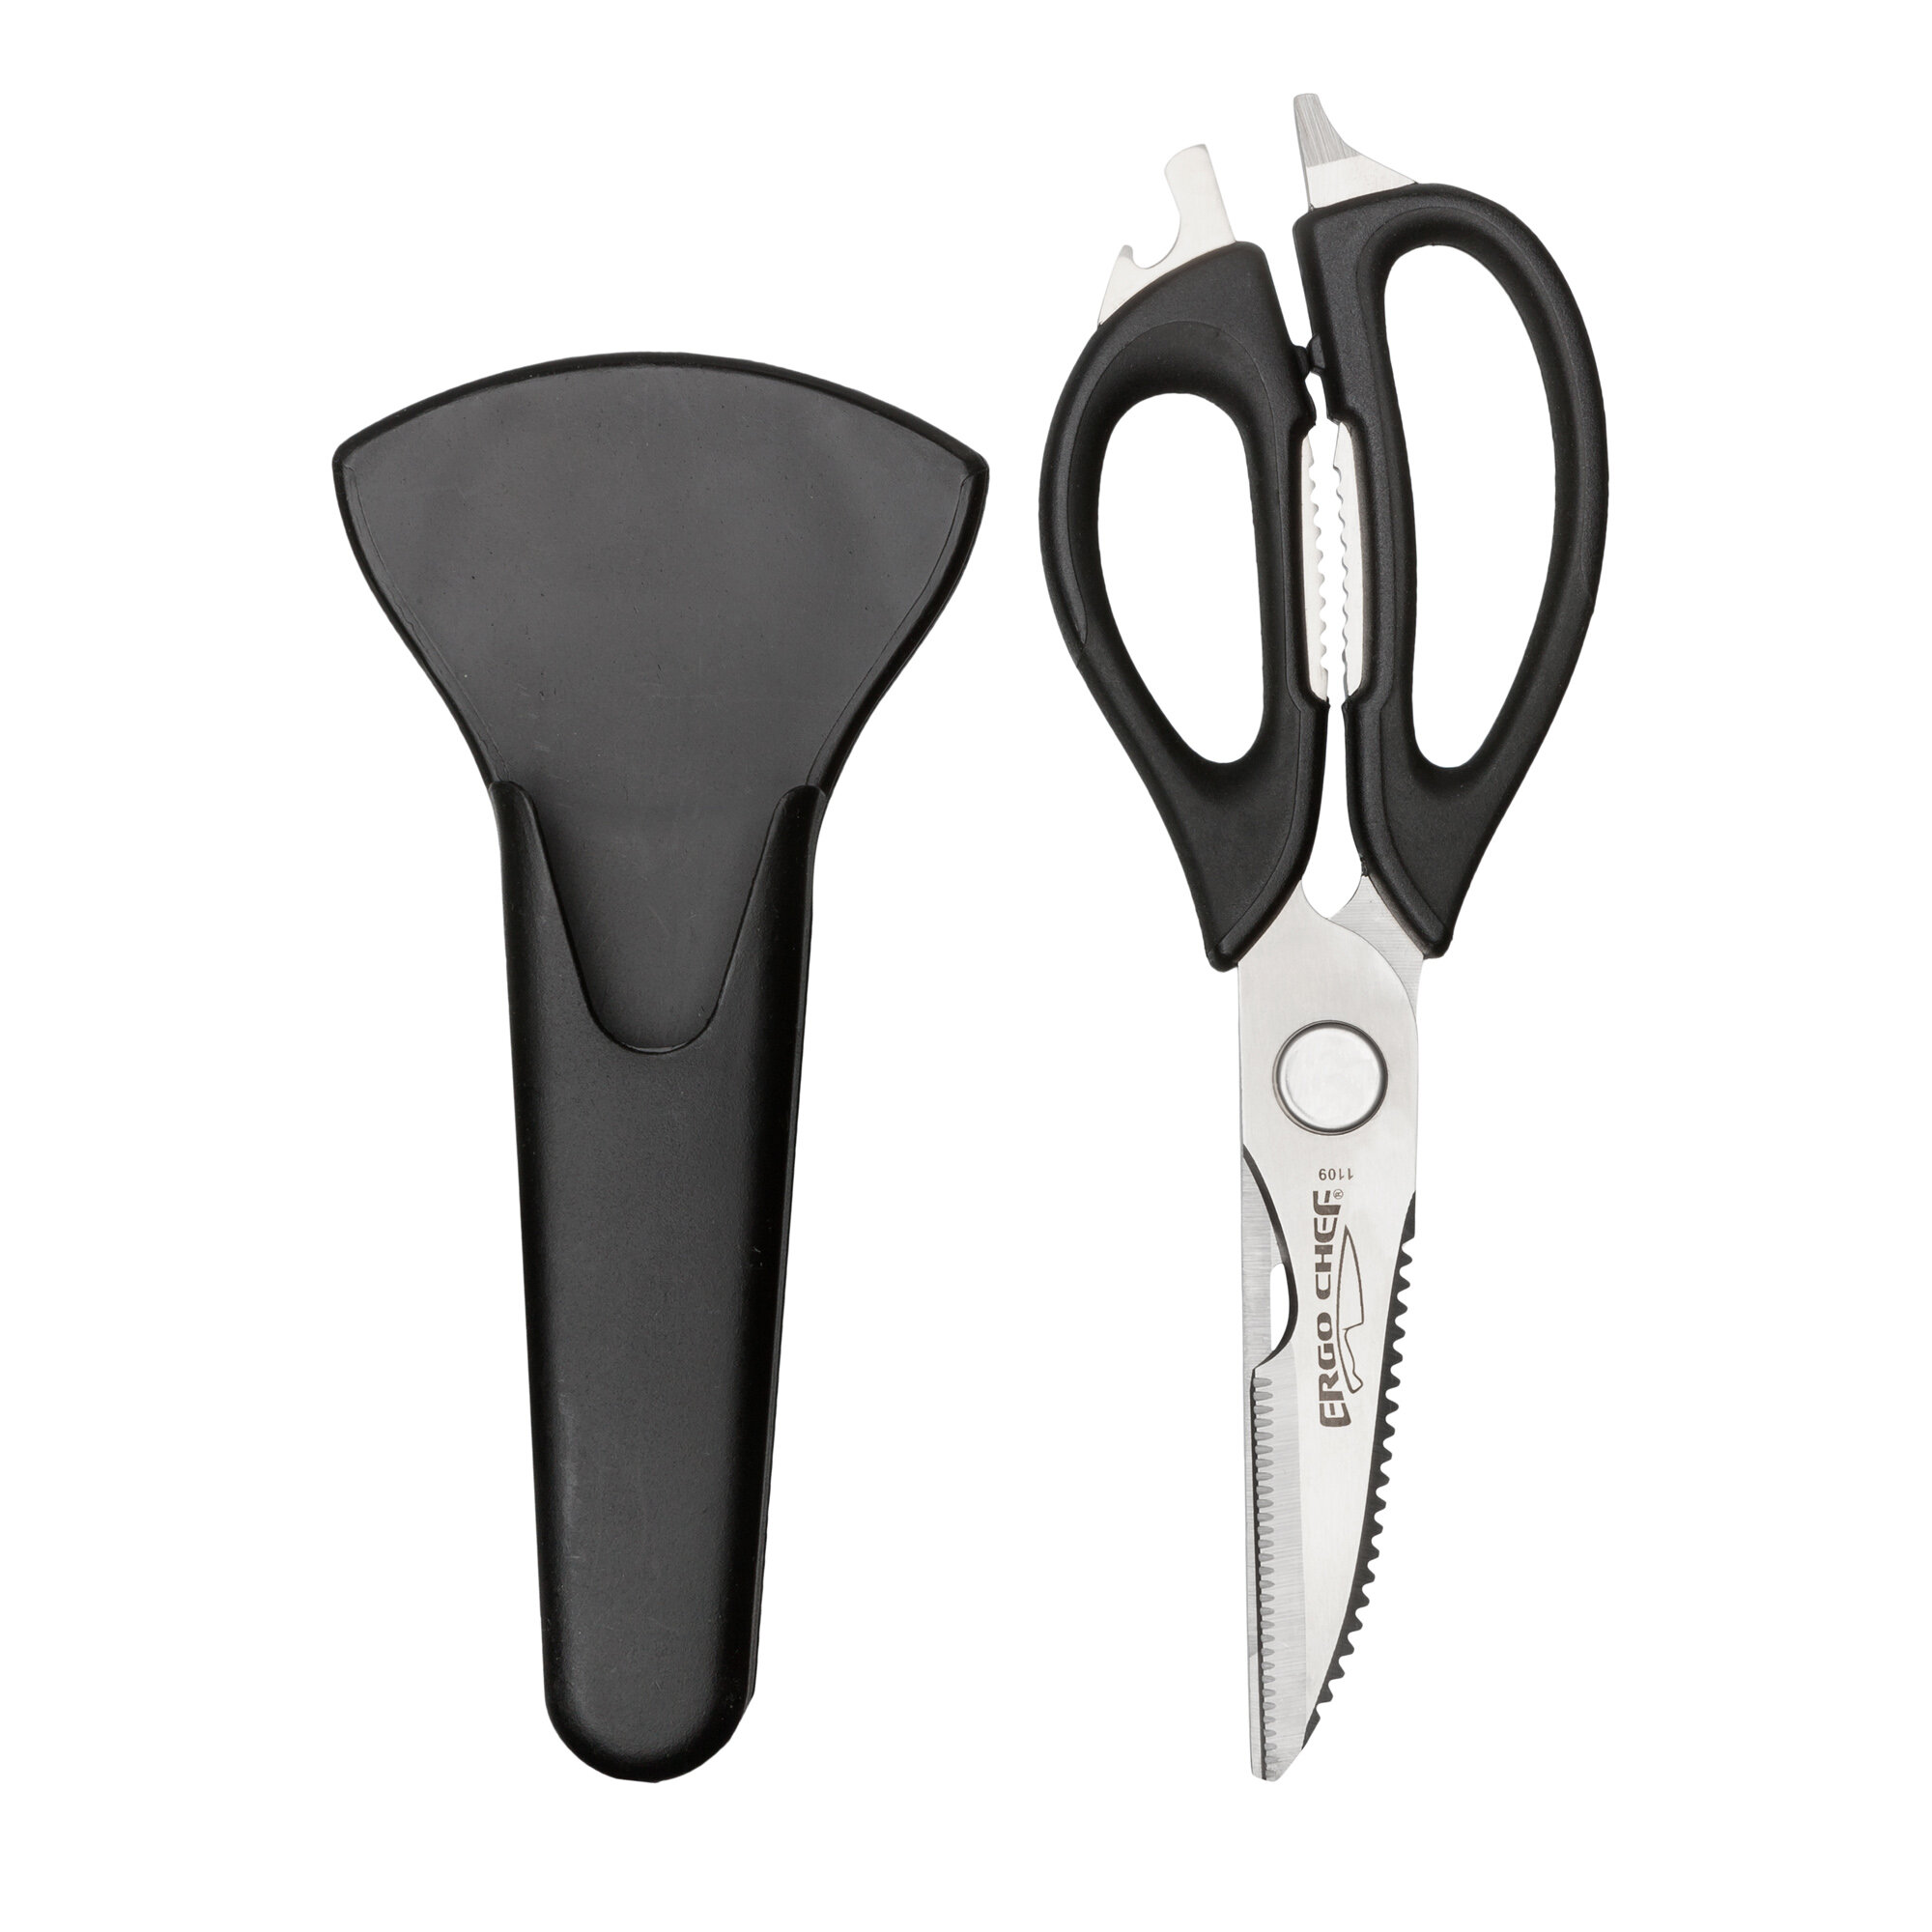 https://assets.wfcdn.com/im/26810187/compr-r85/1395/139541121/ergo-chef-pull-apart-all-purpose-kitchen-scissors.jpg